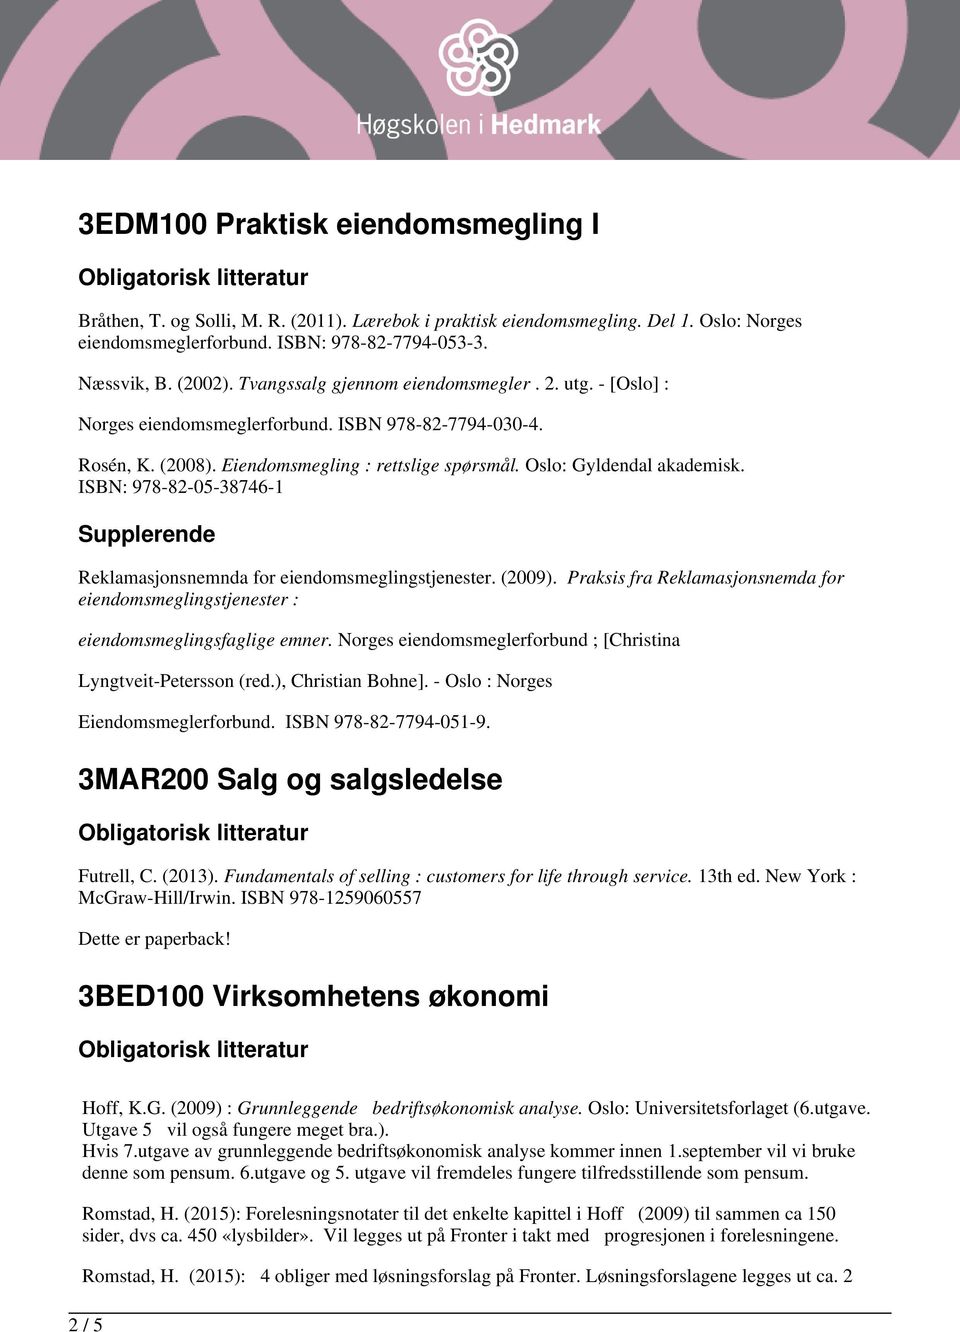 ISBN: 978-82-05-38746-1 Reklamasjonsnemnda for eiendomsmeglingstjenester. (2009). Praksis fra Reklamasjonsnemda for eiendomsmeglingstjenester : eiendomsmeglingsfaglige emner.